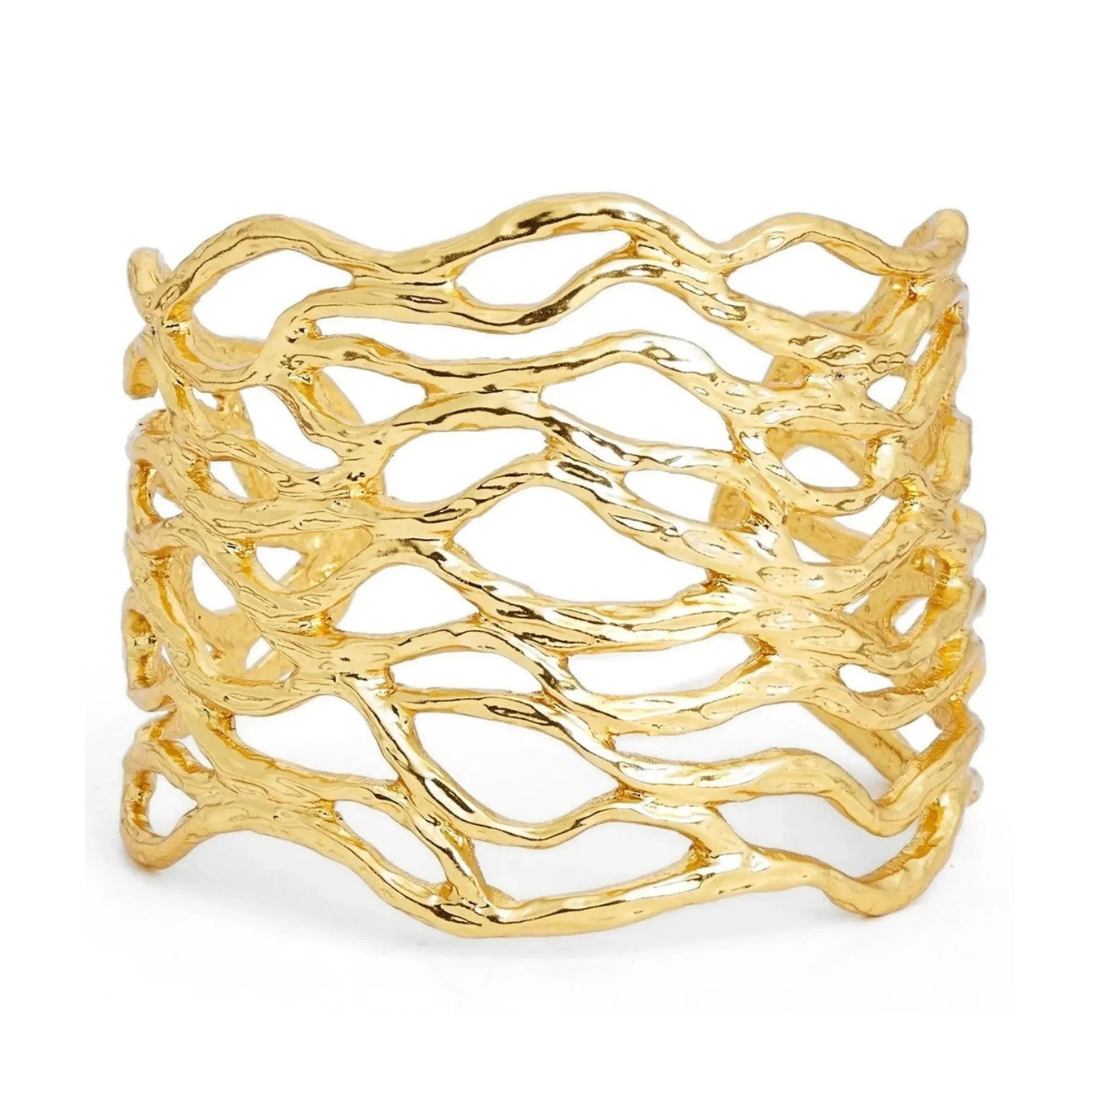 Openwork Cuff Bracelet in gold